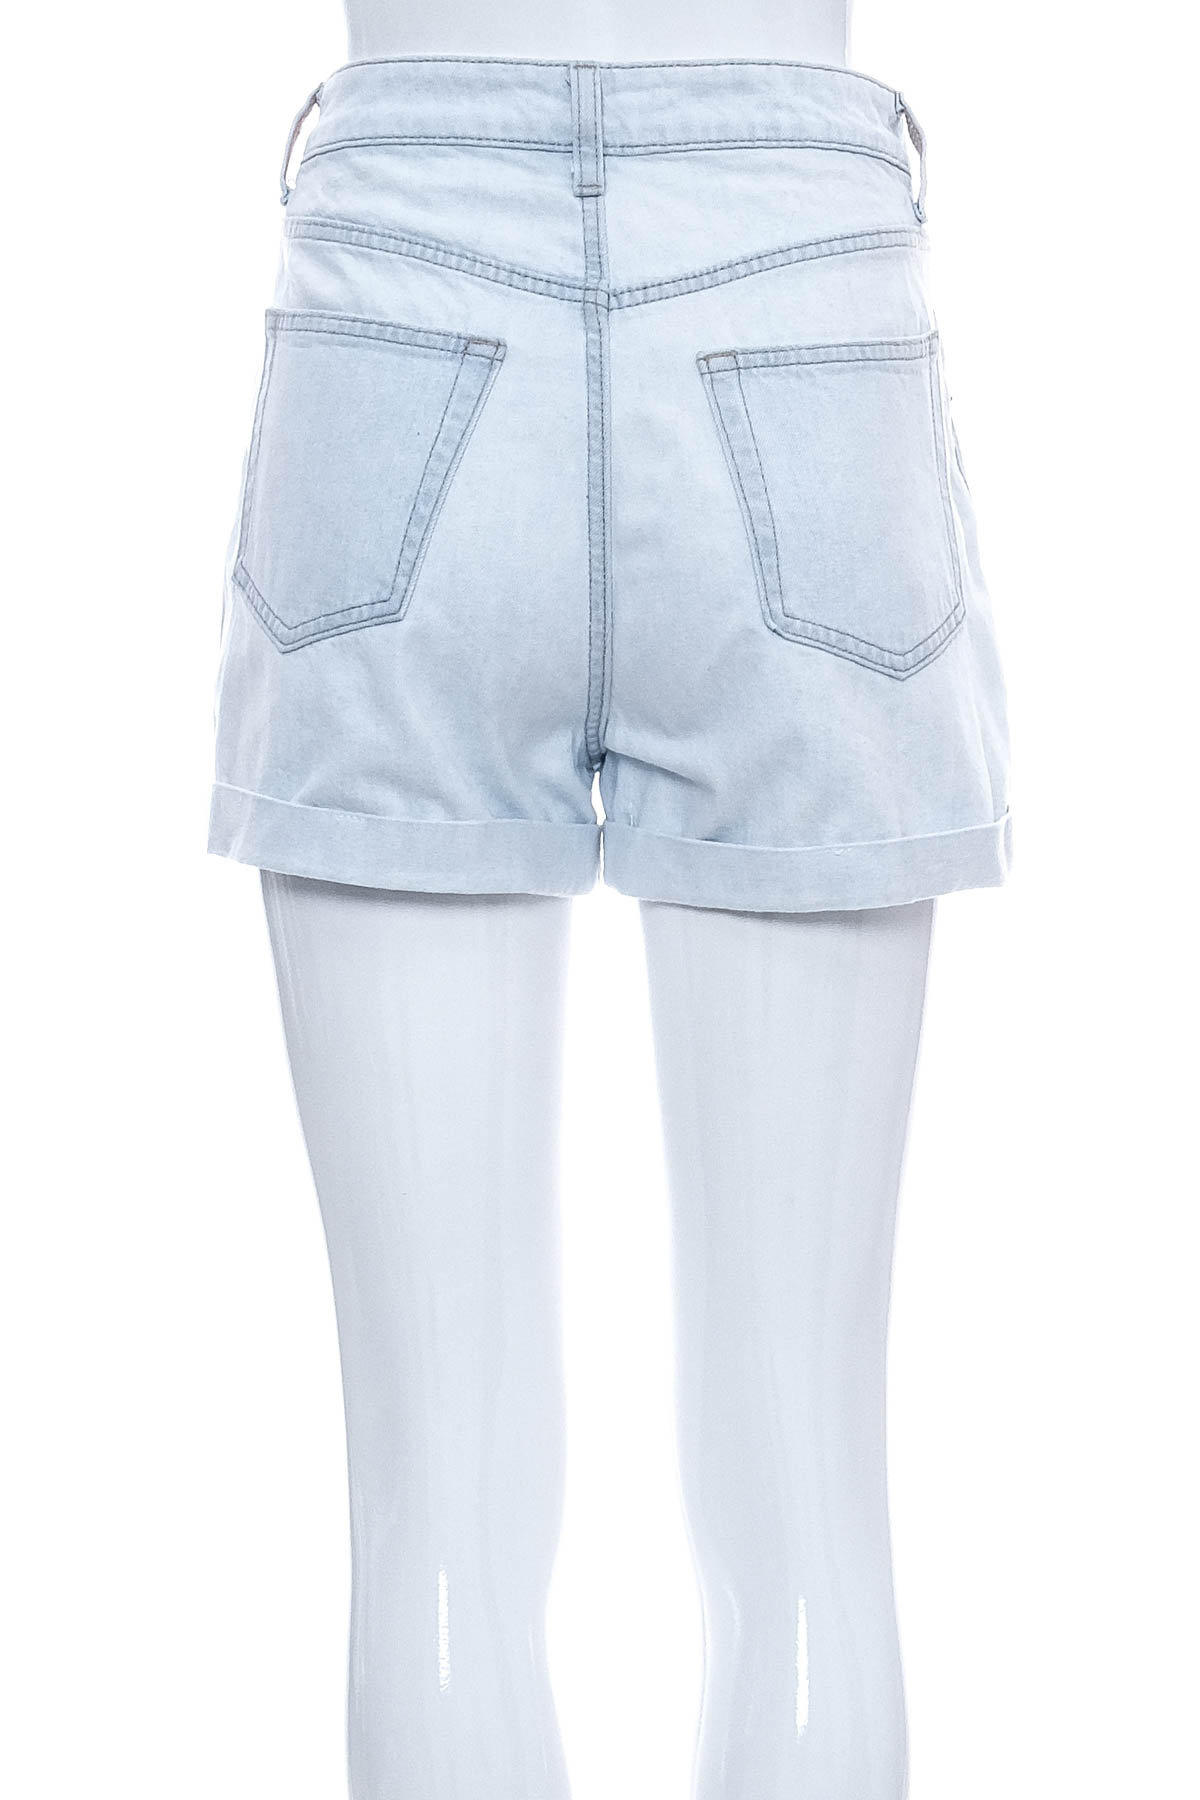 Γυναικείο κοντό παντελόνι - DIVIDED - 1